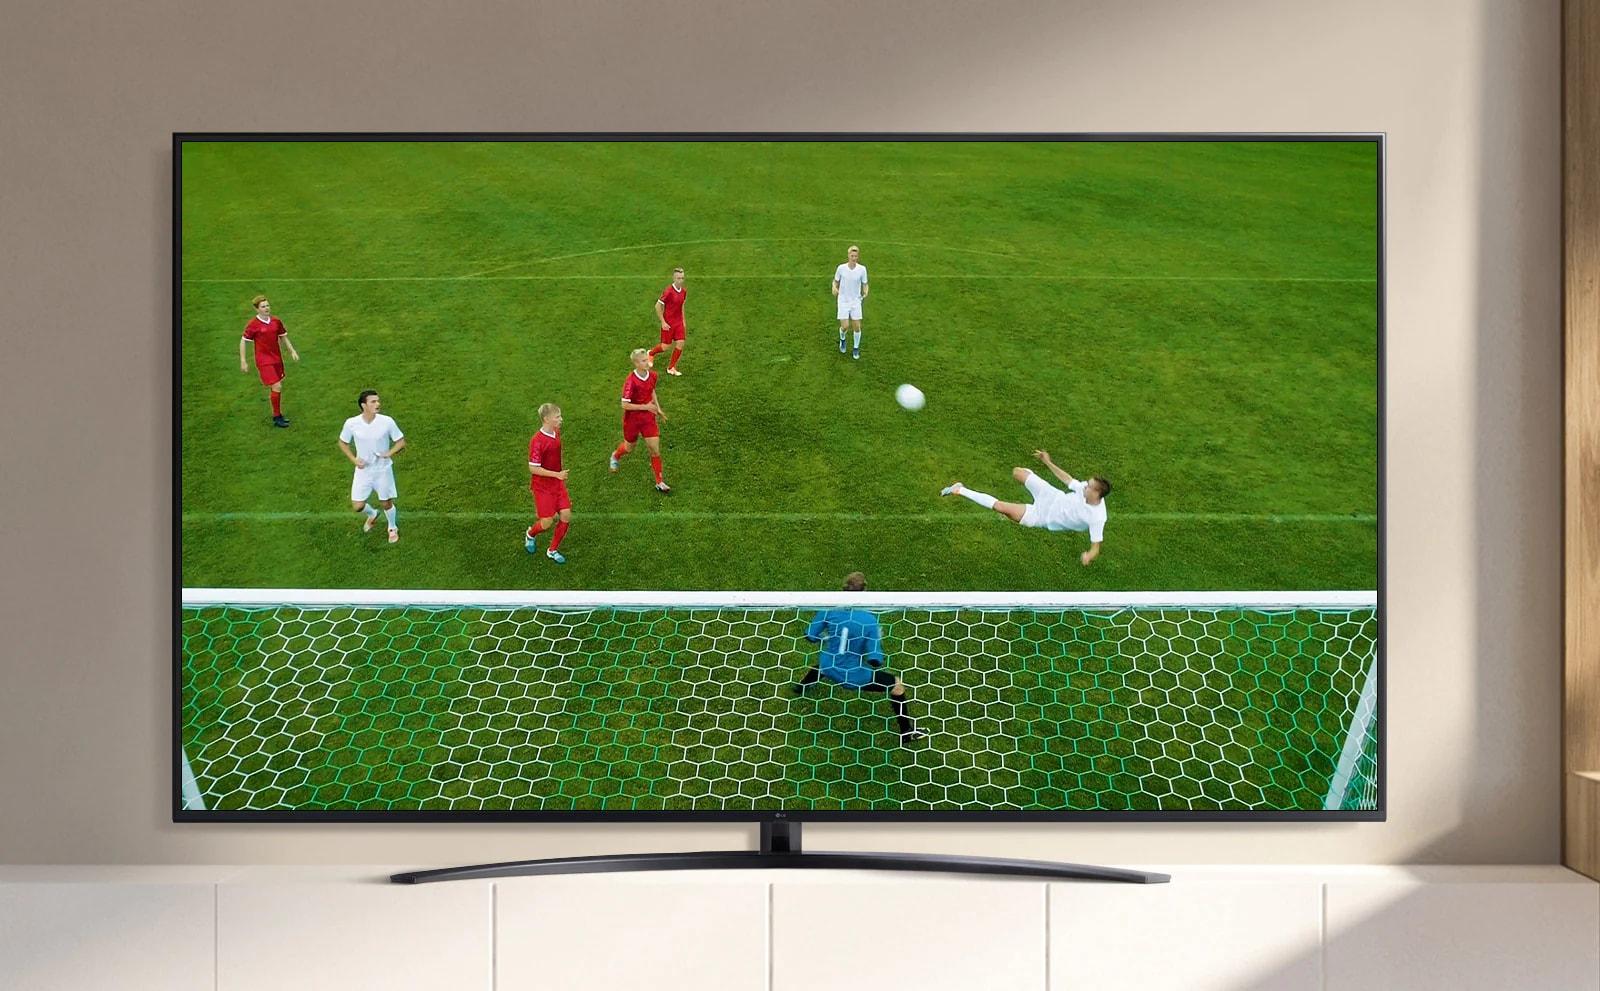 La pantalla de un televisor reproduce un video de un jugador de fútbol haciendo un gol durante un partido de fútbol. (reproducir el video)